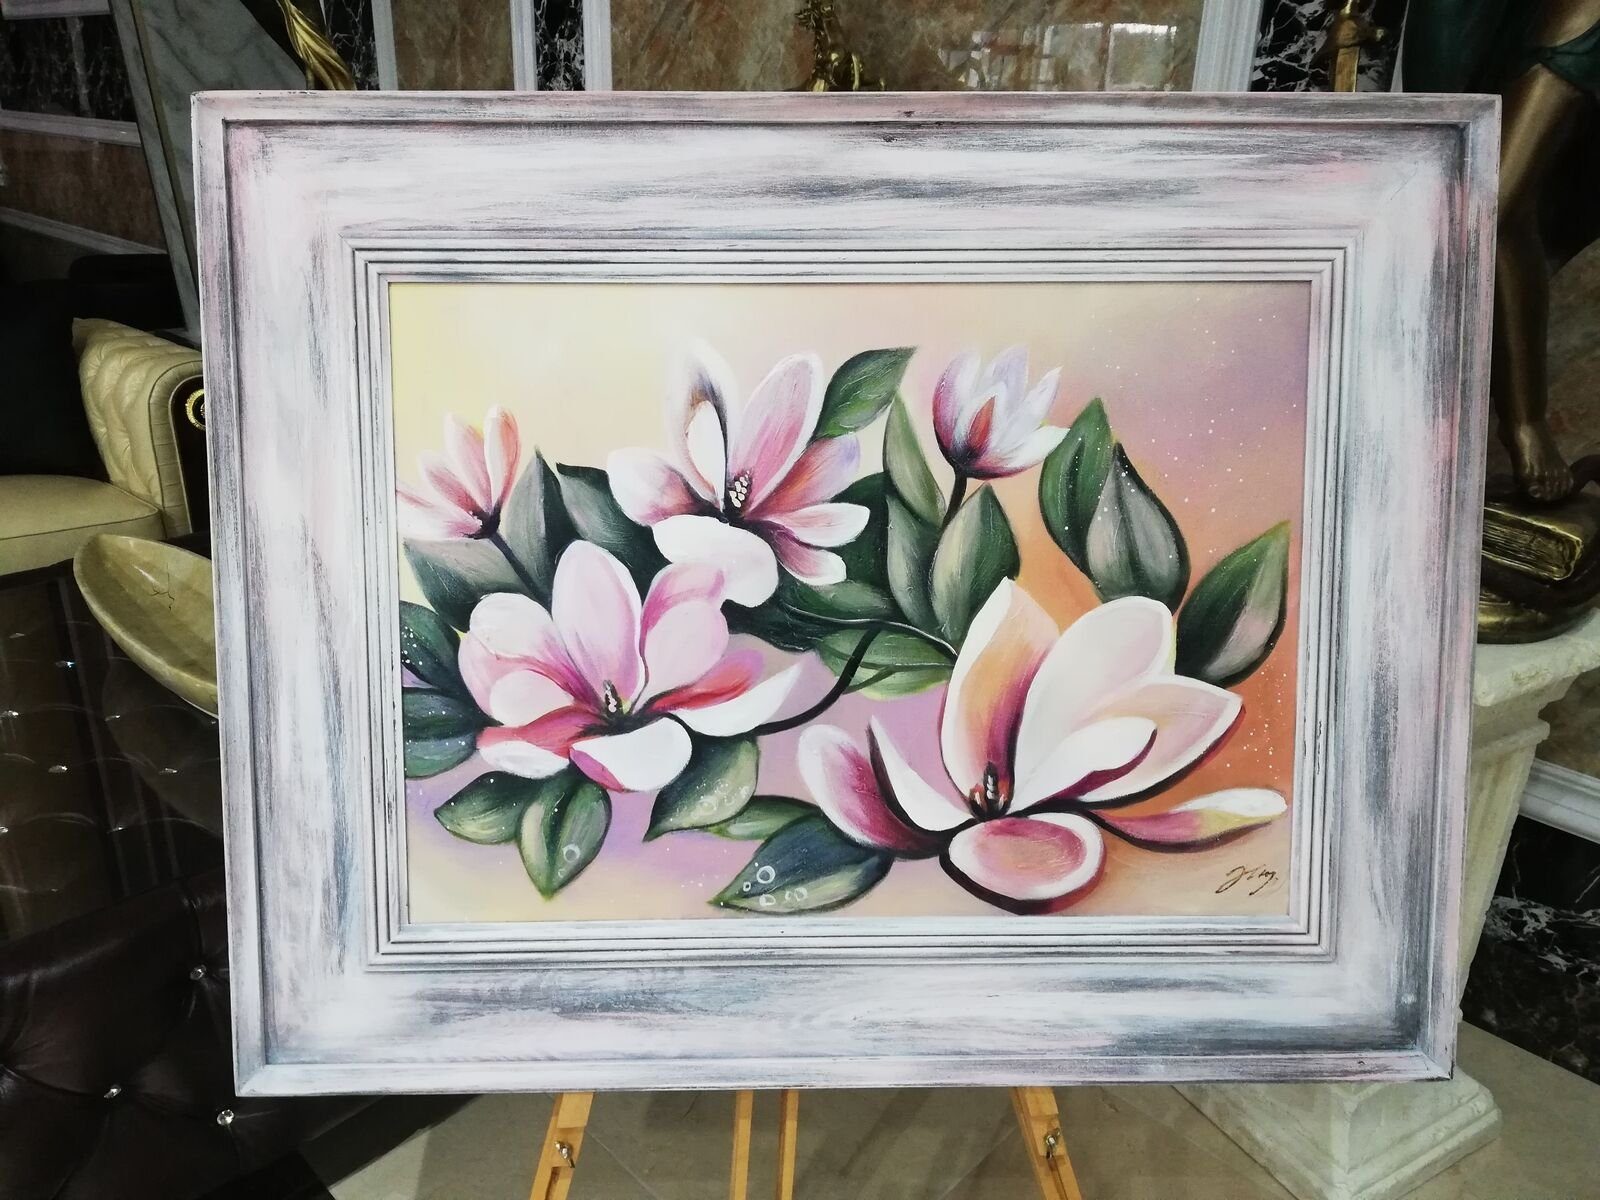 lieferbar Bilder Öl Sofort JVmoebel Gemälde Blumen Rahmen Blumen 96x76, Pflanzen Gemälde Mit